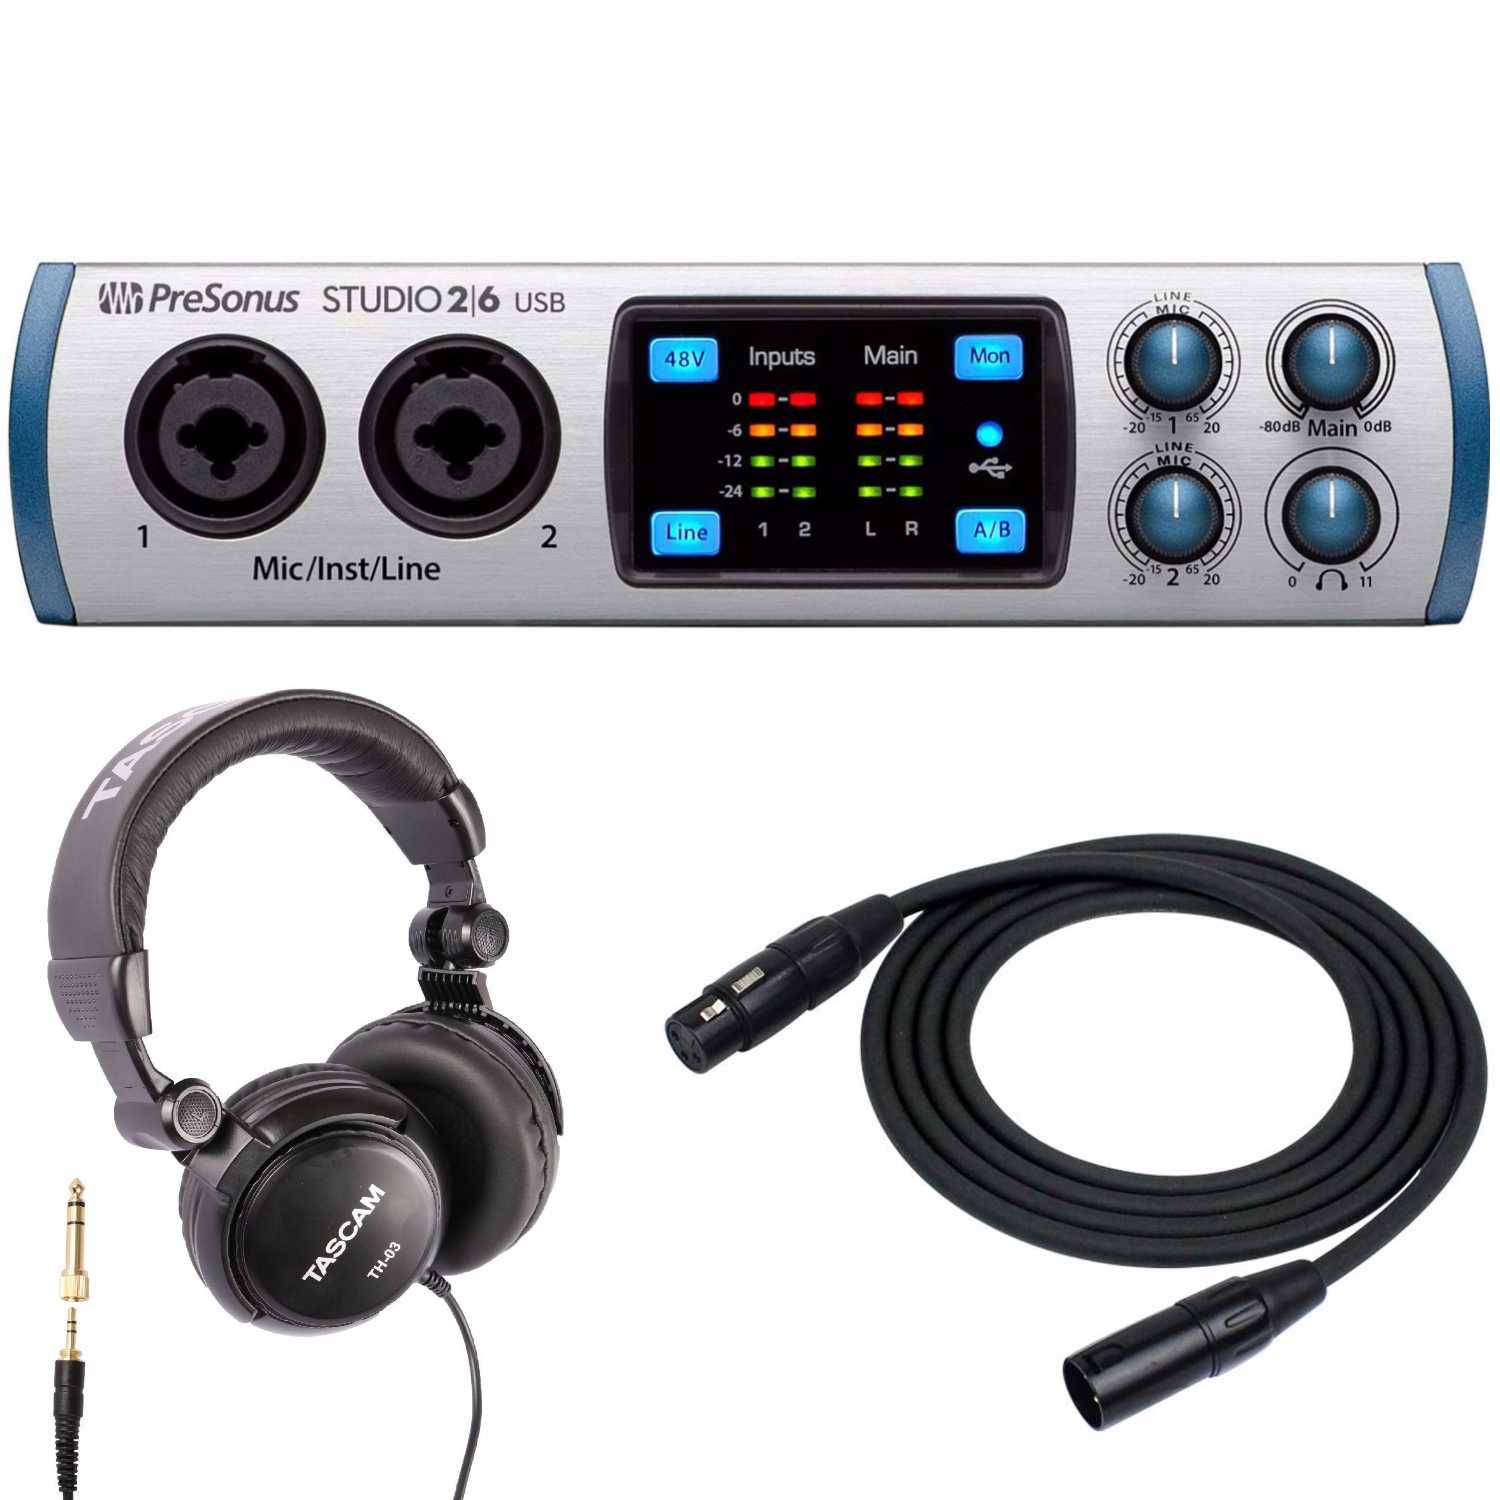 PreSonus Studio 26 USB 2x4 MIDI Interface with Studio Headphones and XLR Cable